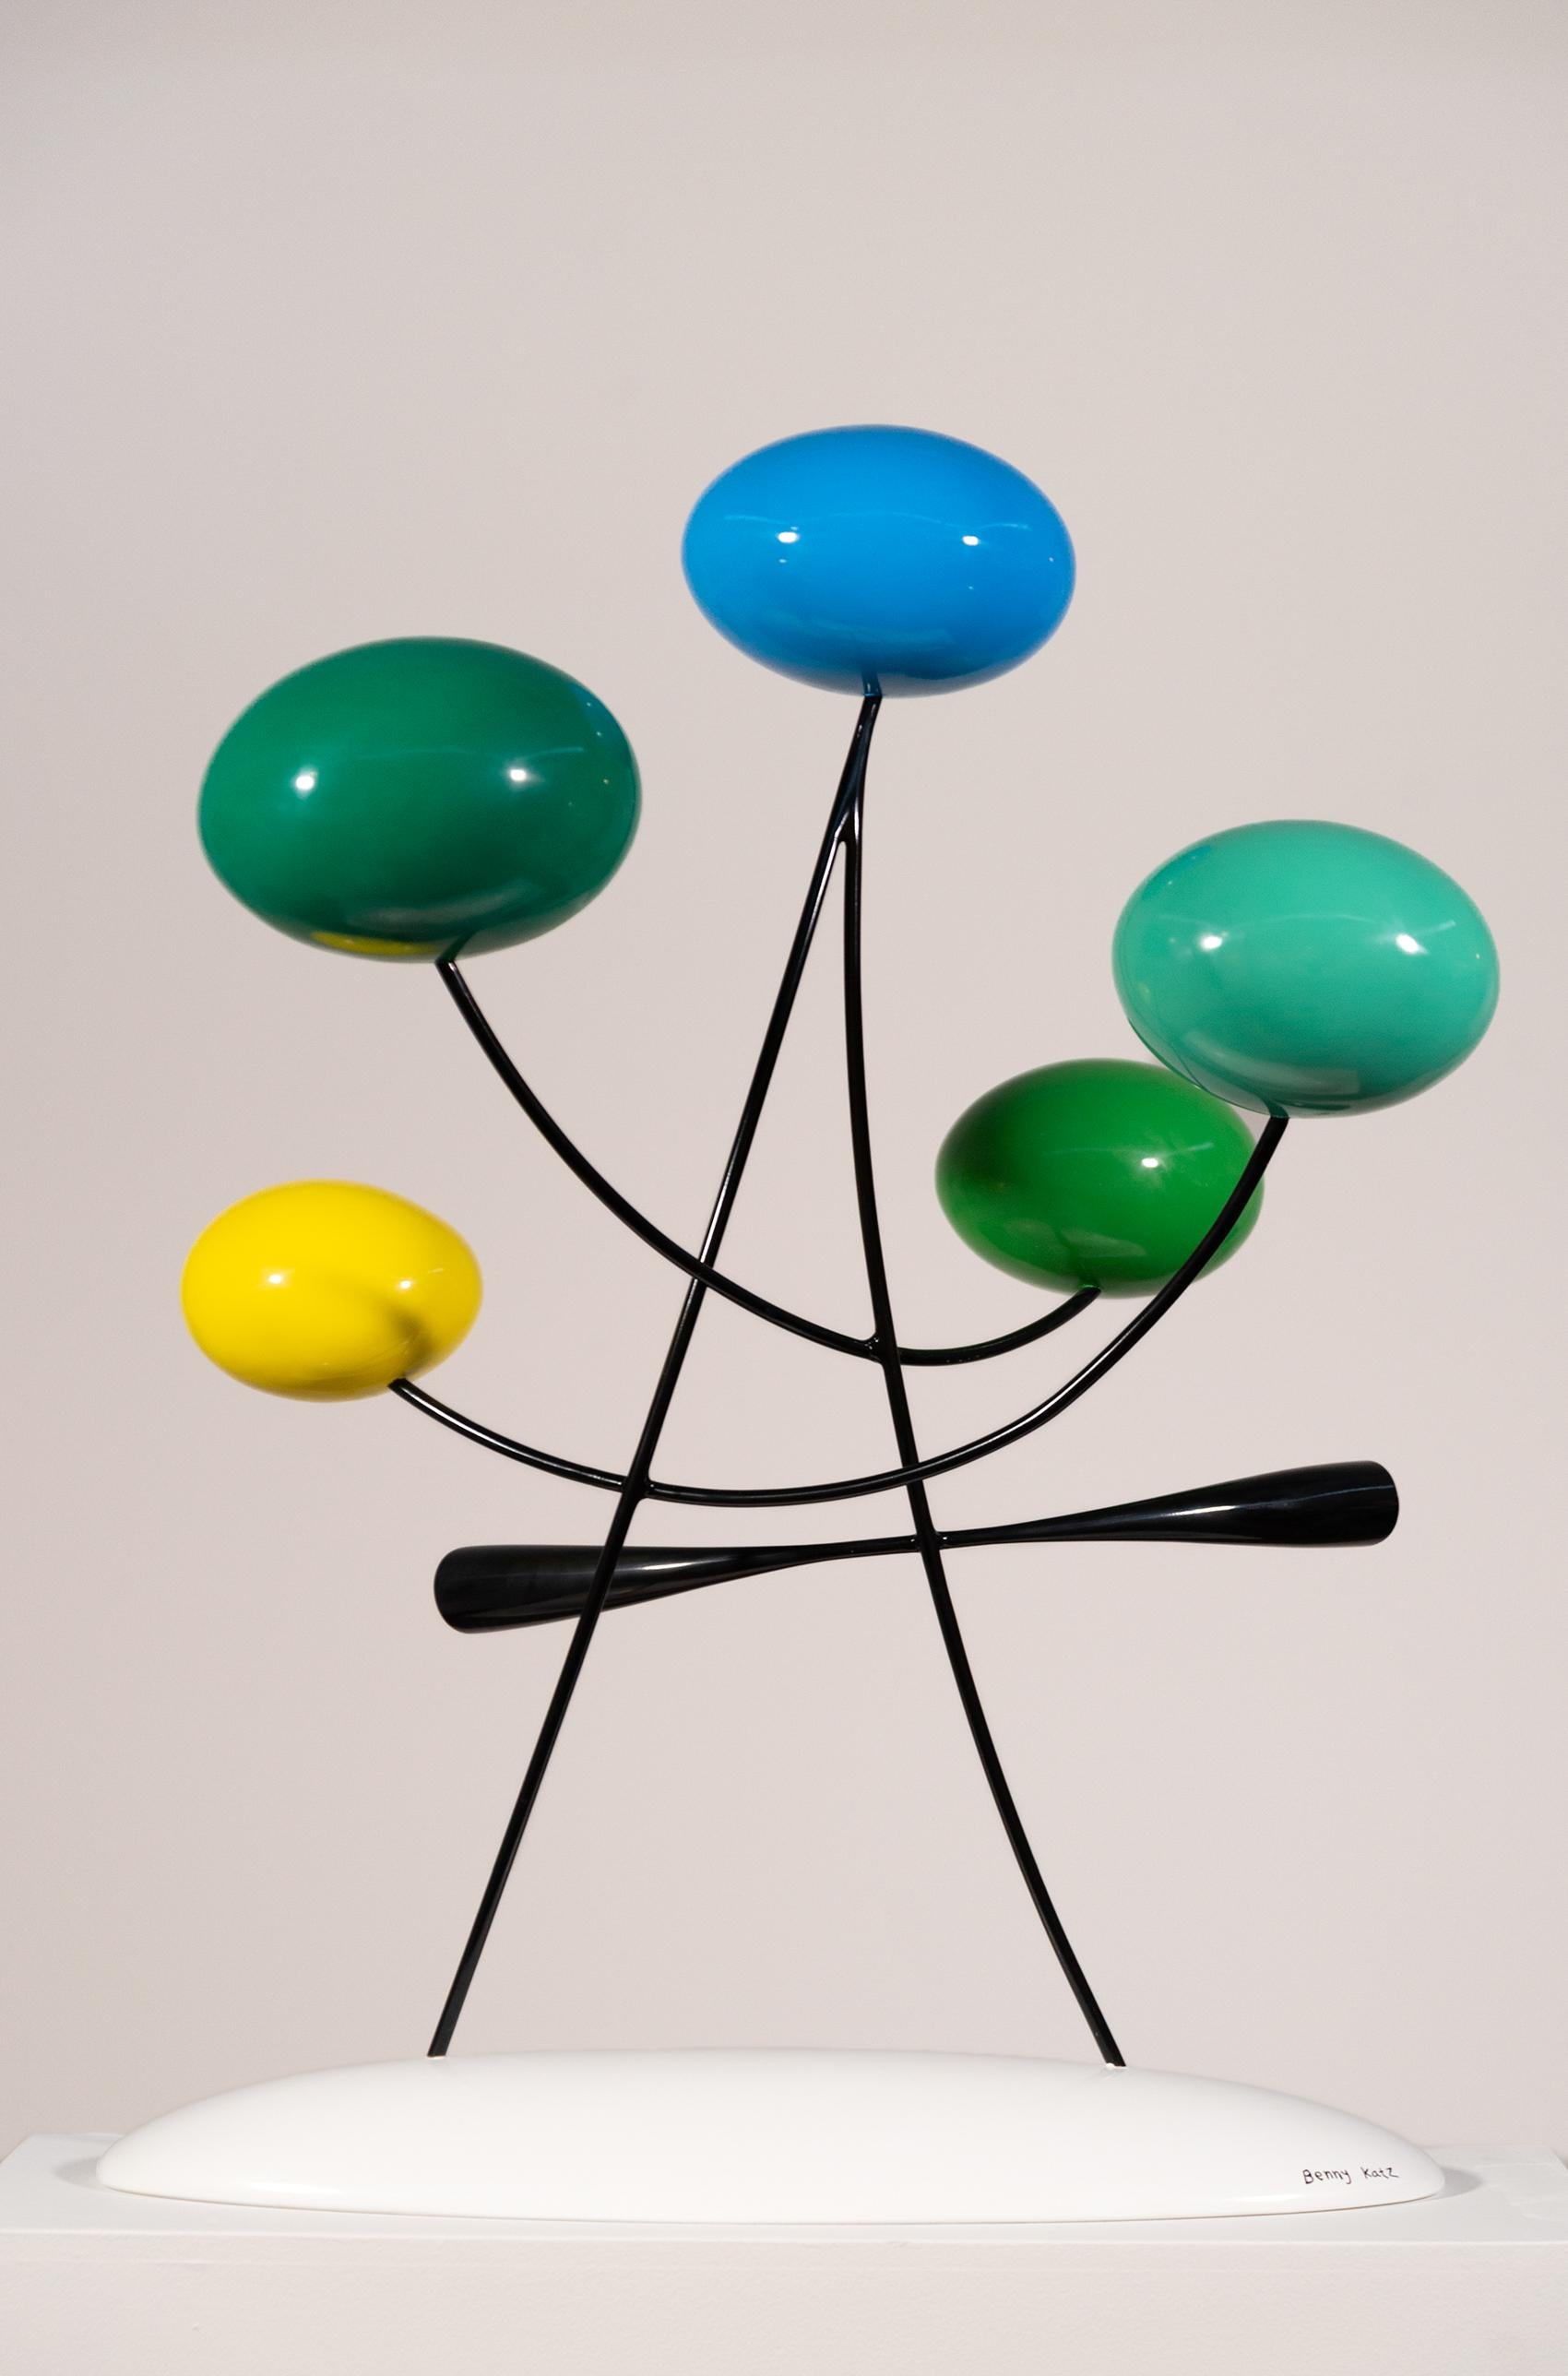 Un bouquet de fleurs est la source d'inspiration de cette sculpture de table amusante, brillante et aux couleurs vives, réalisée par l'artiste israélien Benny Katz. Des formes ovales et allongées minimalistes en vert vif, bleu, jaune, turquoise,